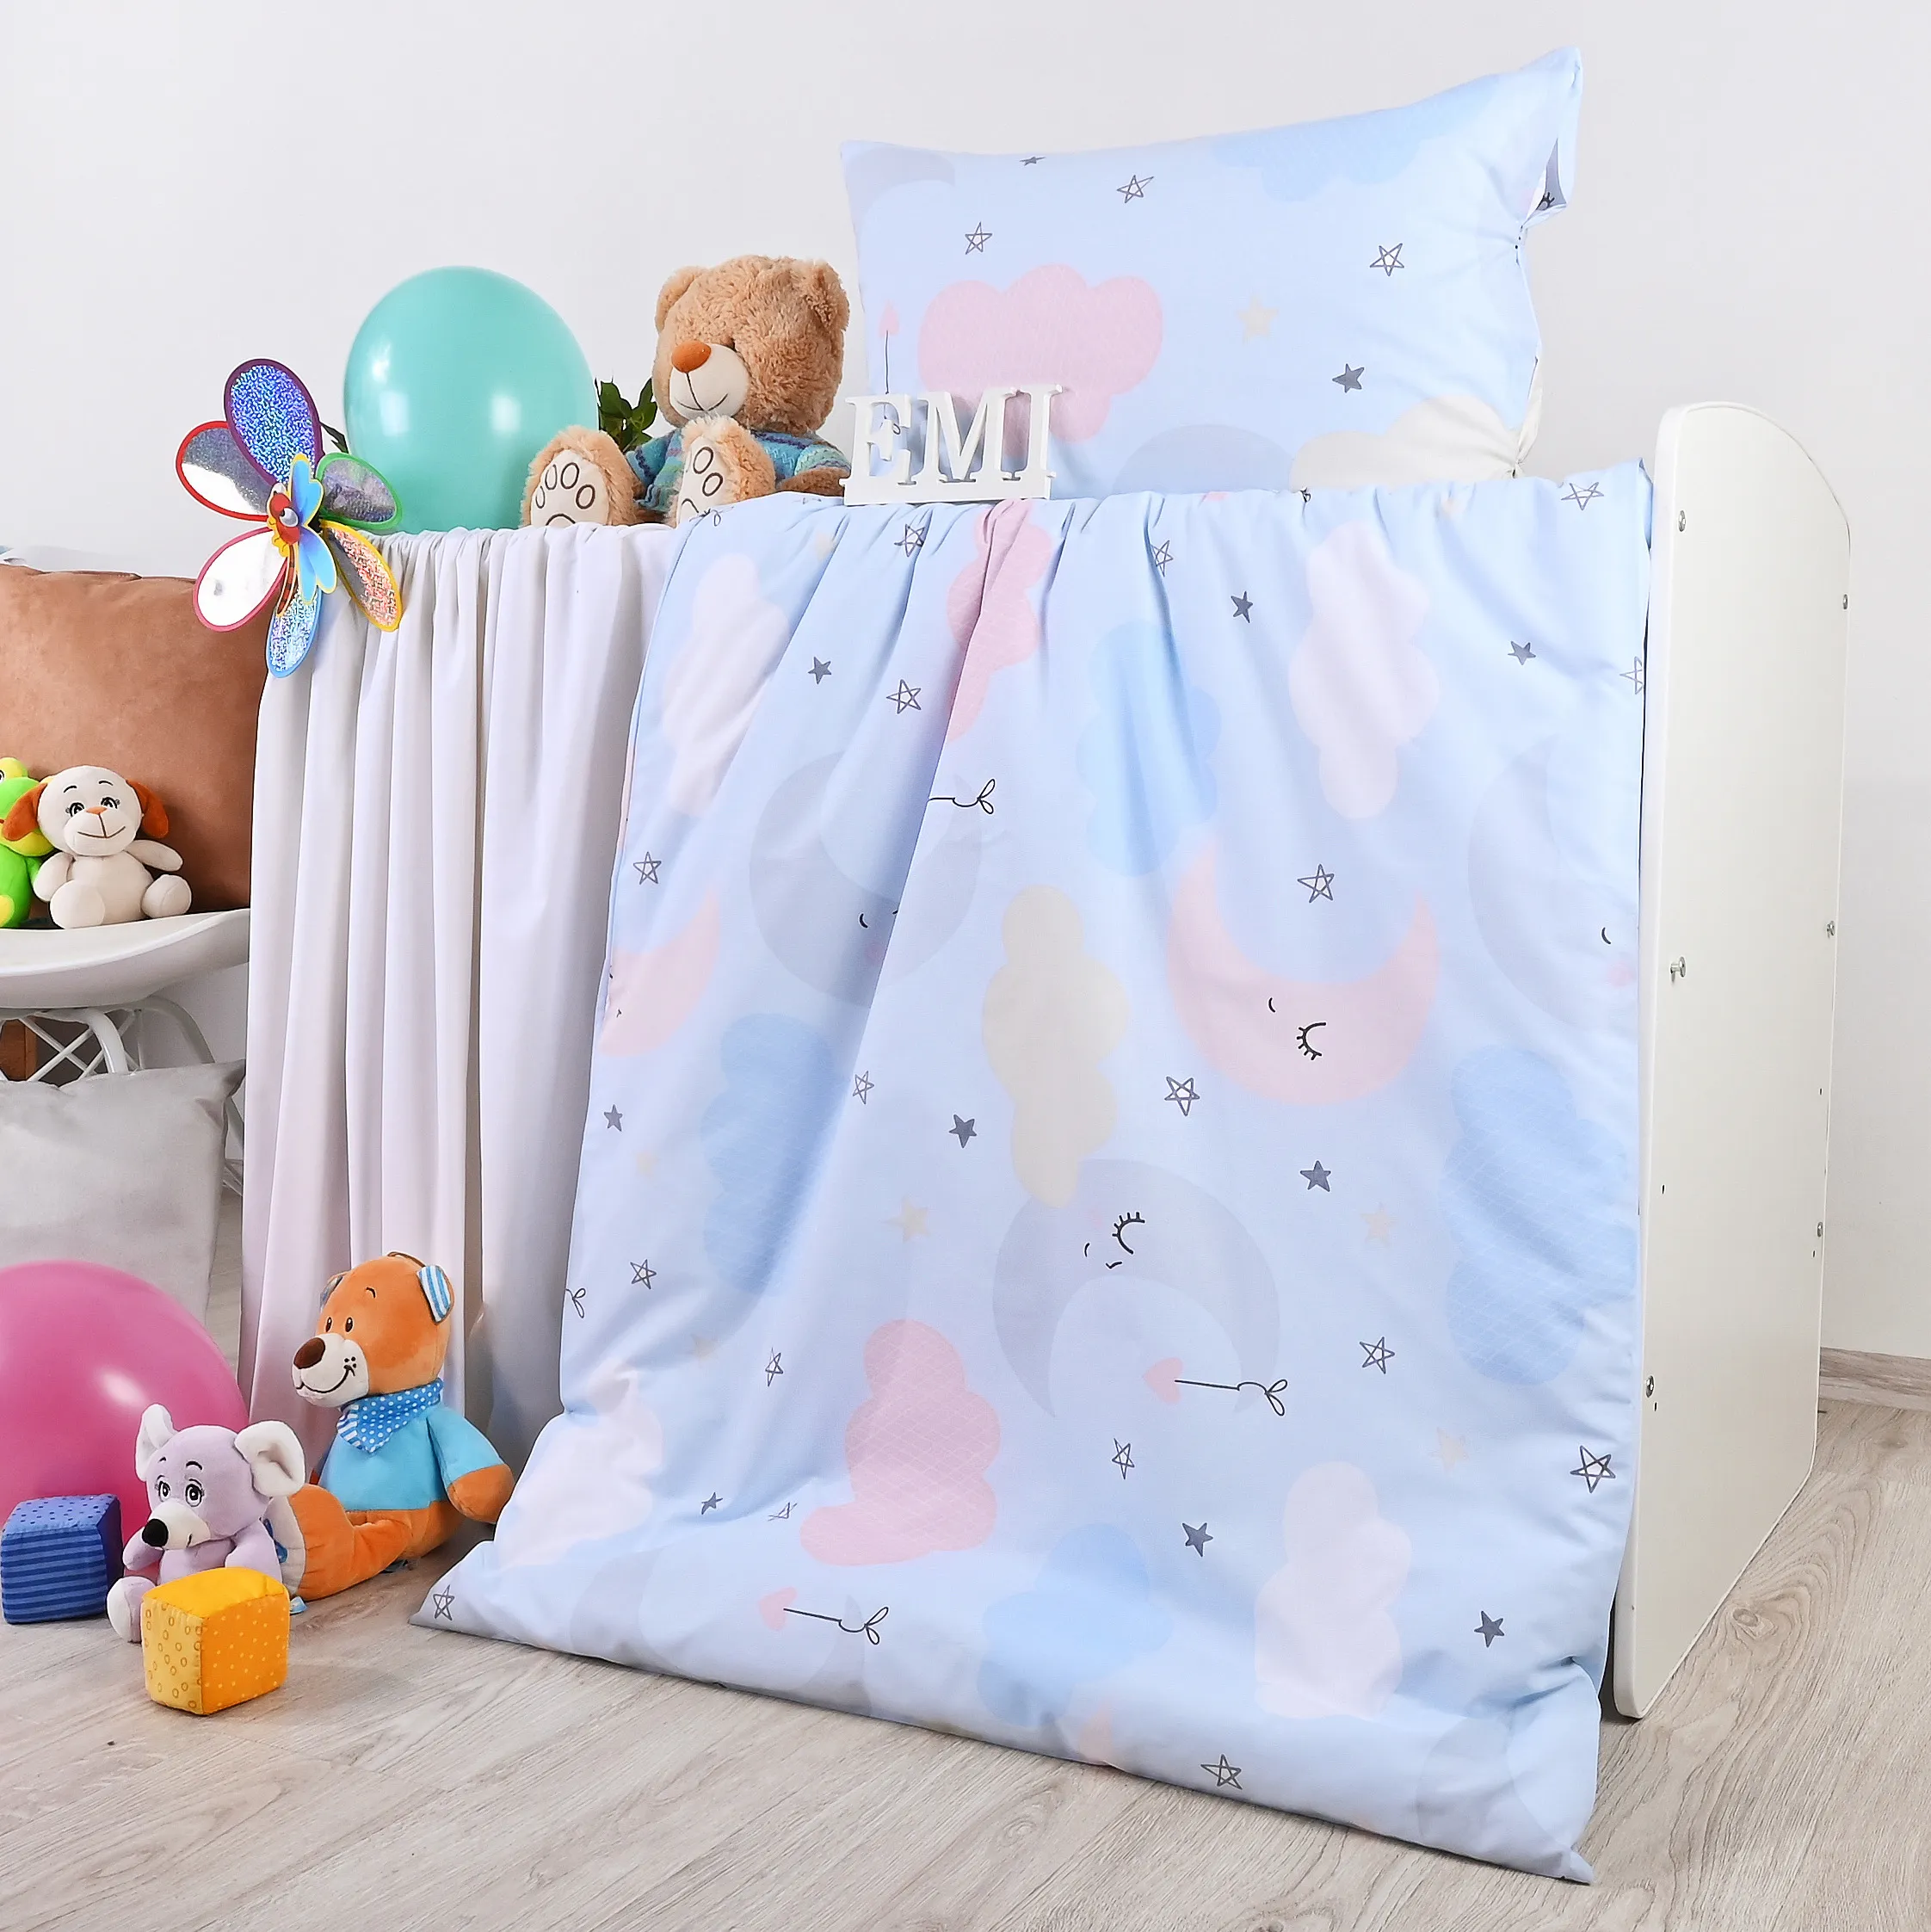 EMI detské posteľné obliečky  bavlnené Heaven modré 1×1ks, detské posteľné obliečky